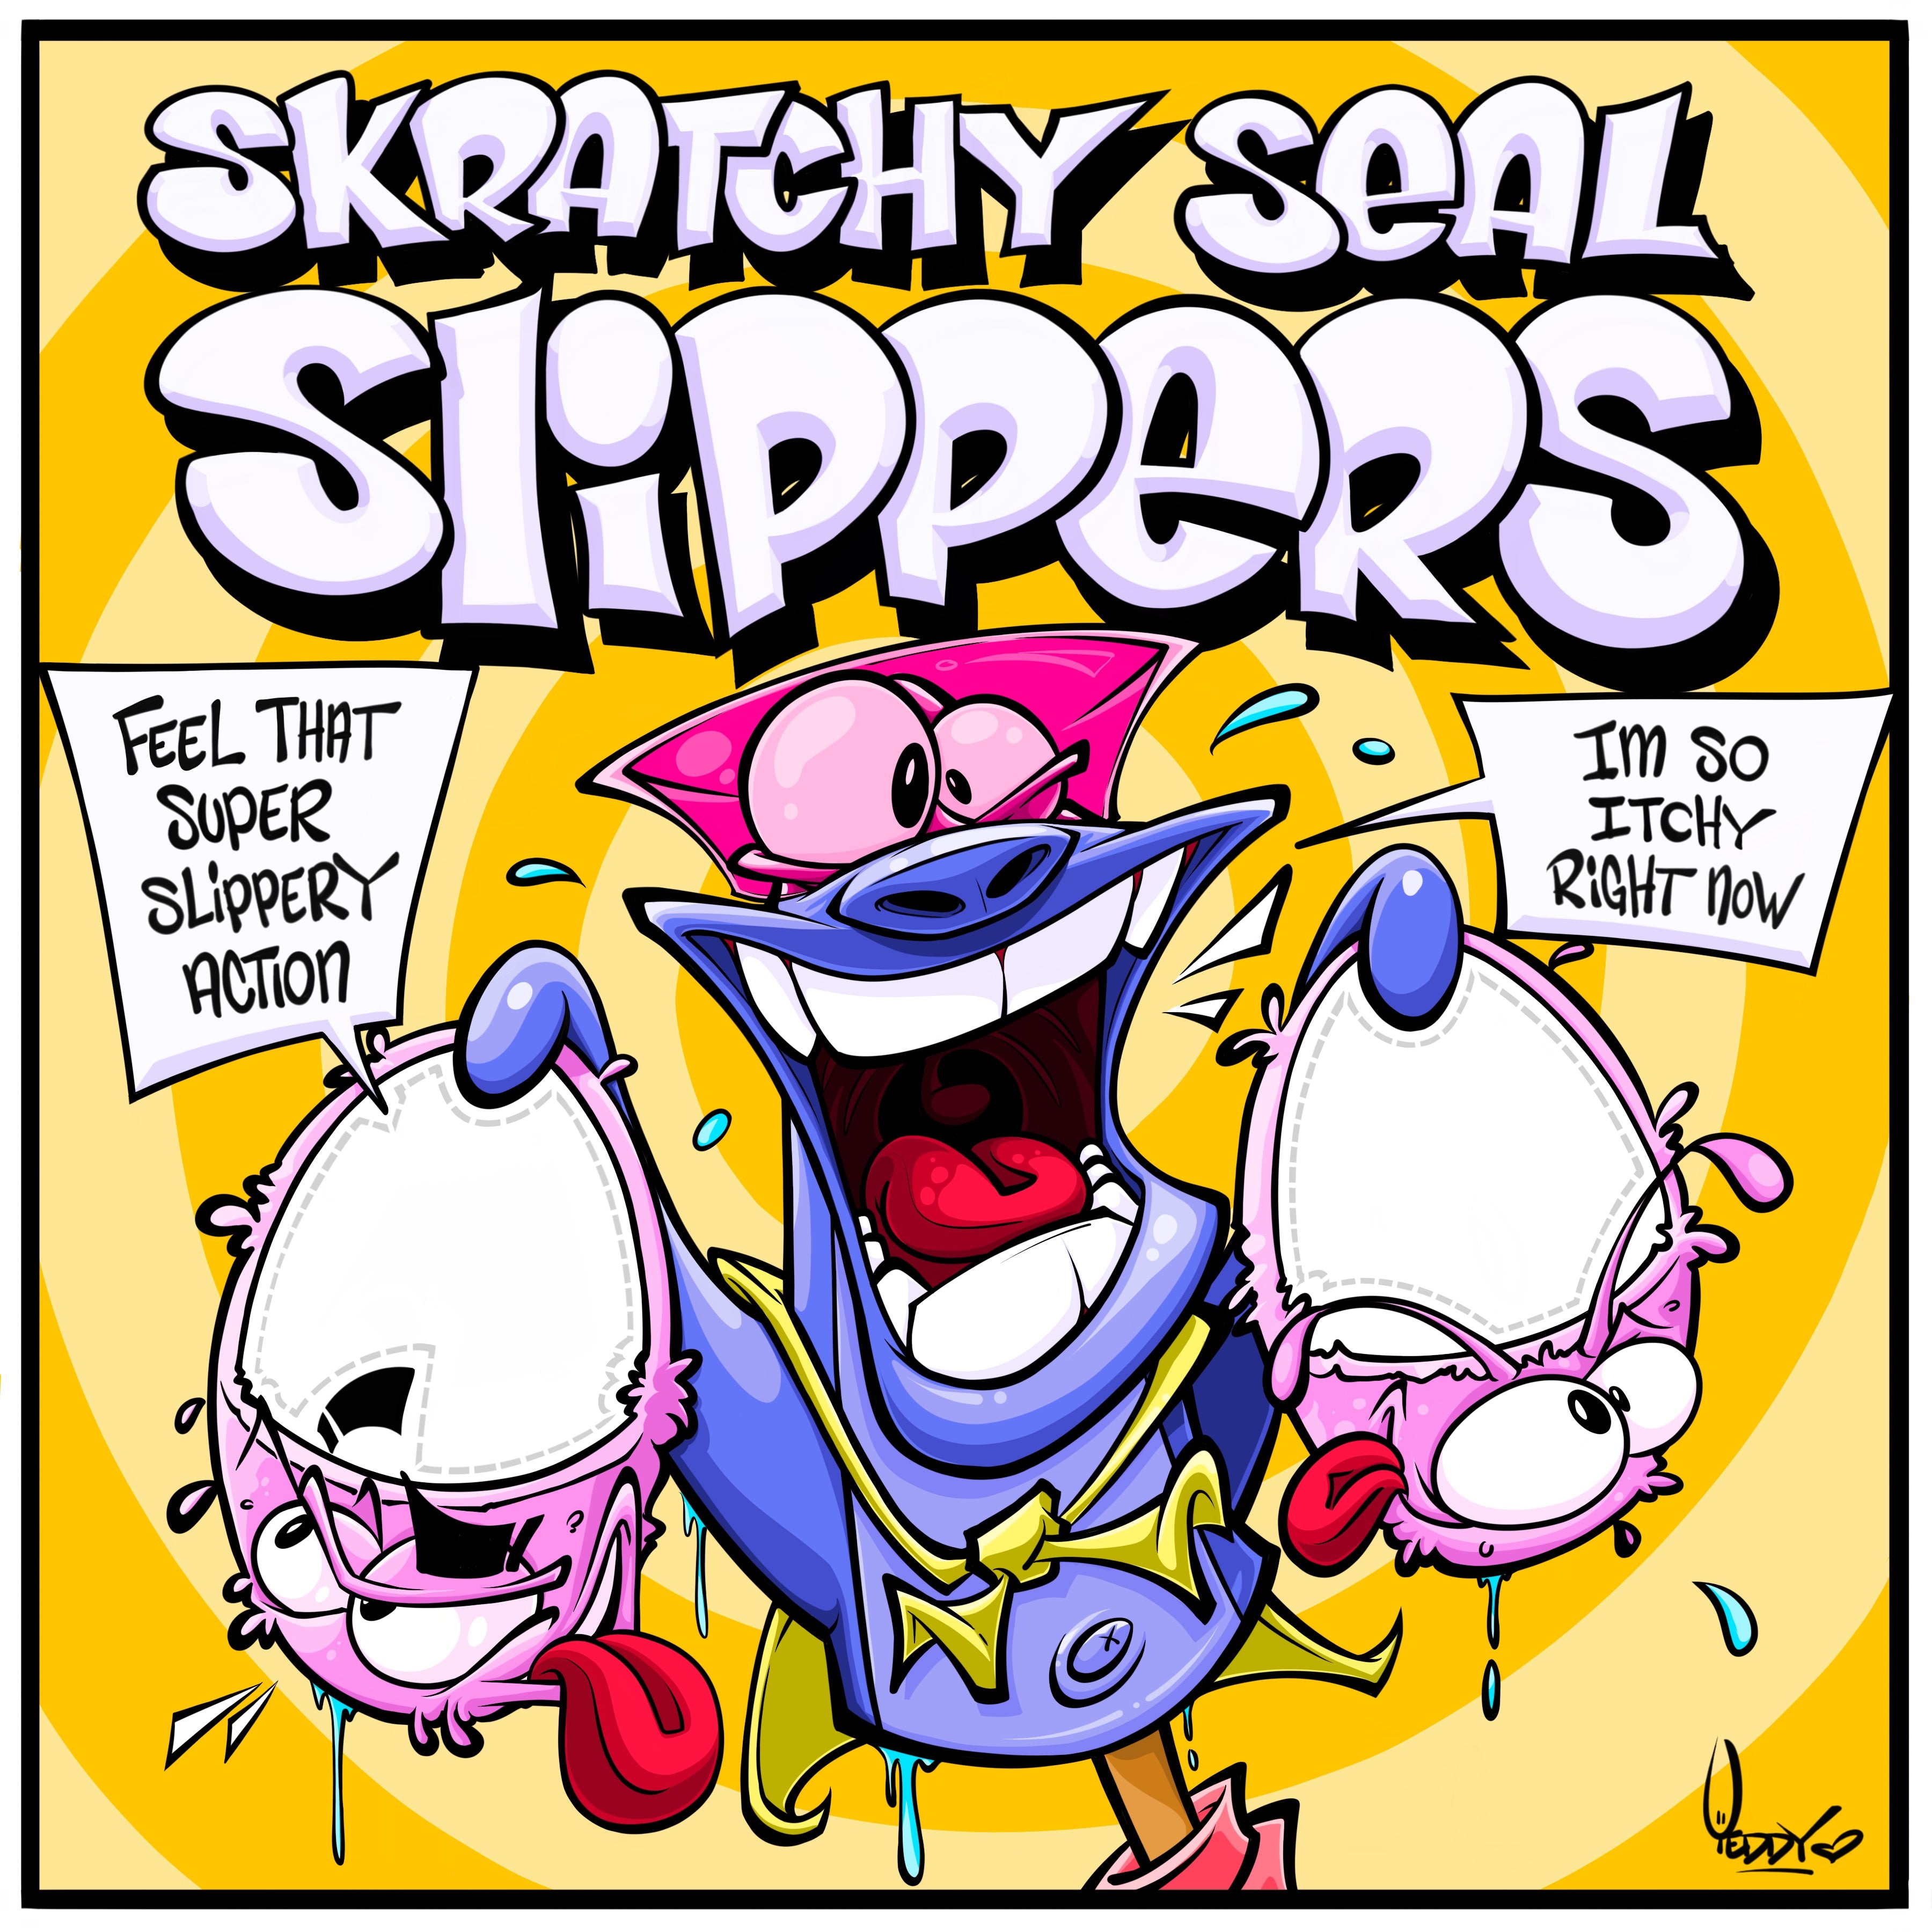 DJ QBERT Skratchy Seal Slippers! 12" Slip Mats Pair